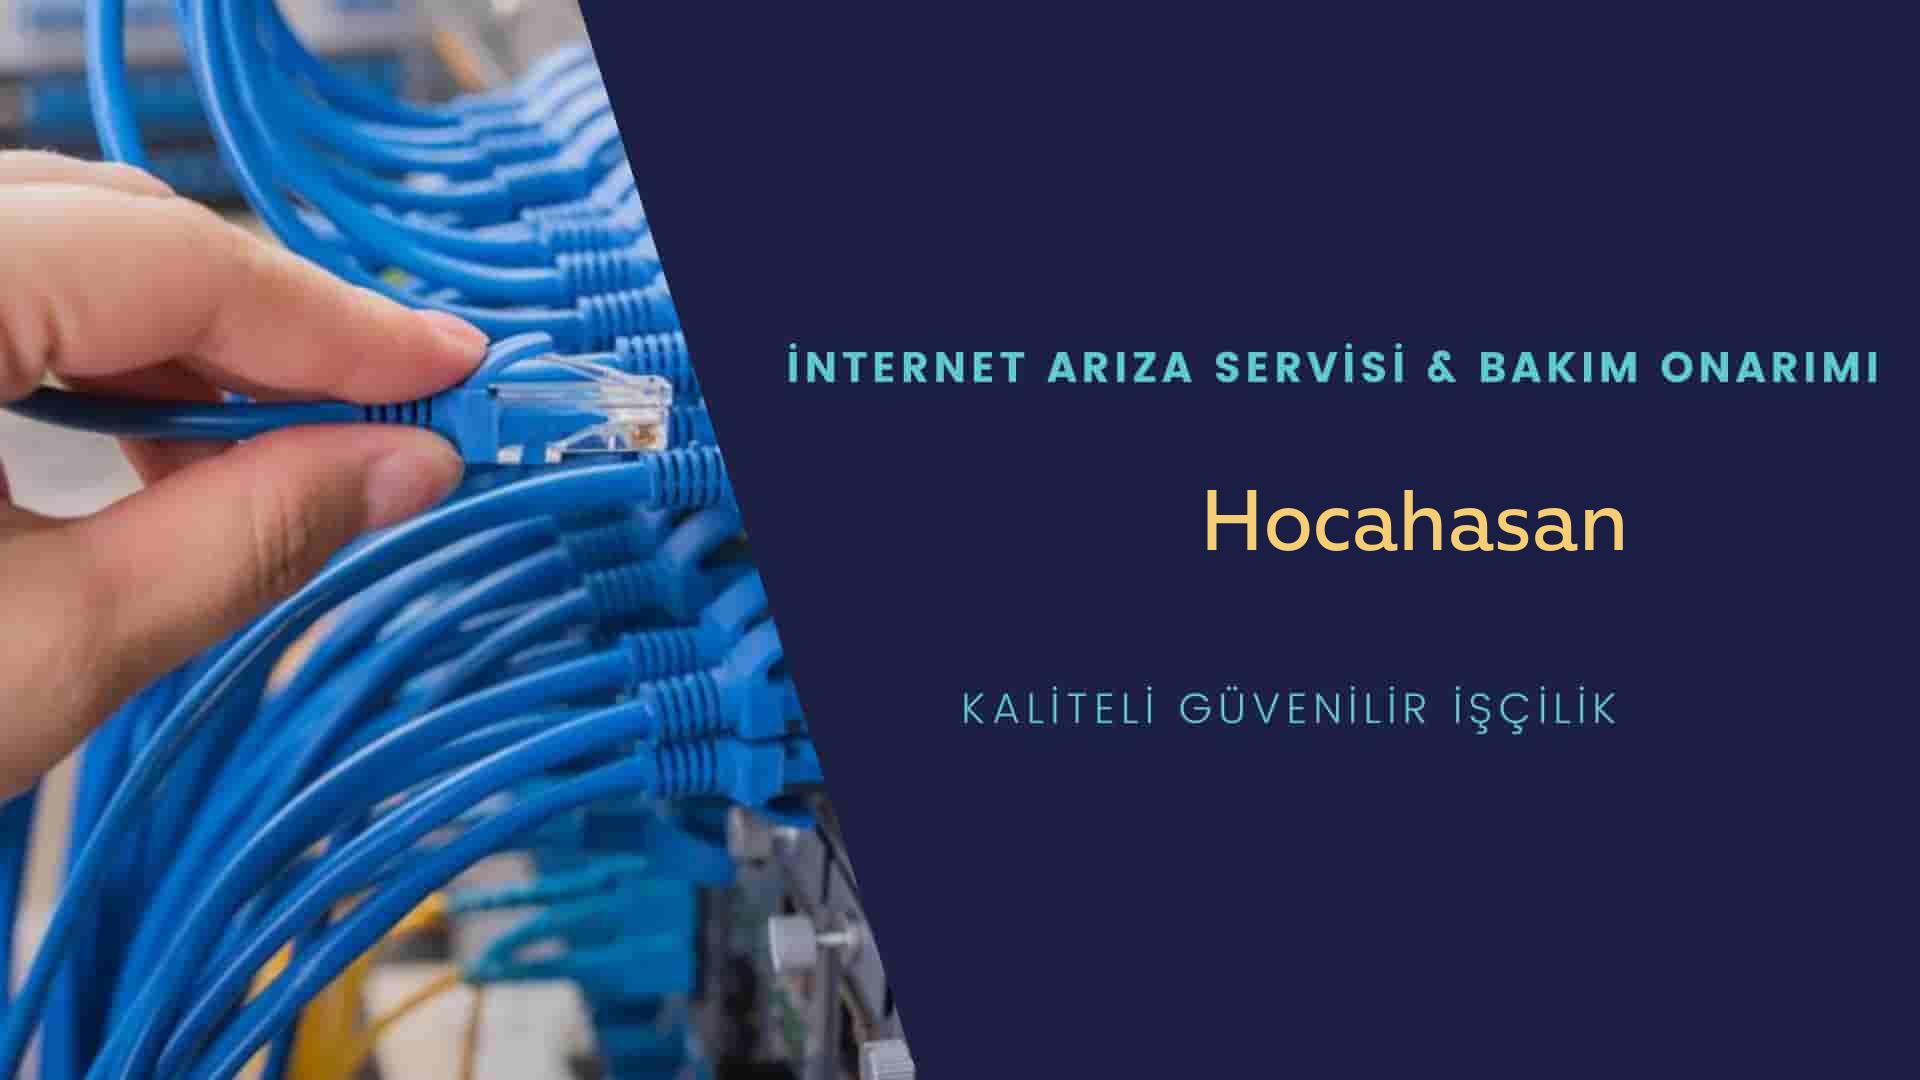 Hocahasan Mahallesi internet kablosu çekimi yapan yerler veya elektrikçiler mi? arıyorsunuz doğru yerdesiniz o zaman sizlere 7/24 yardımcı olacak profesyonel ustalarımız bir telefon kadar yakındır size.